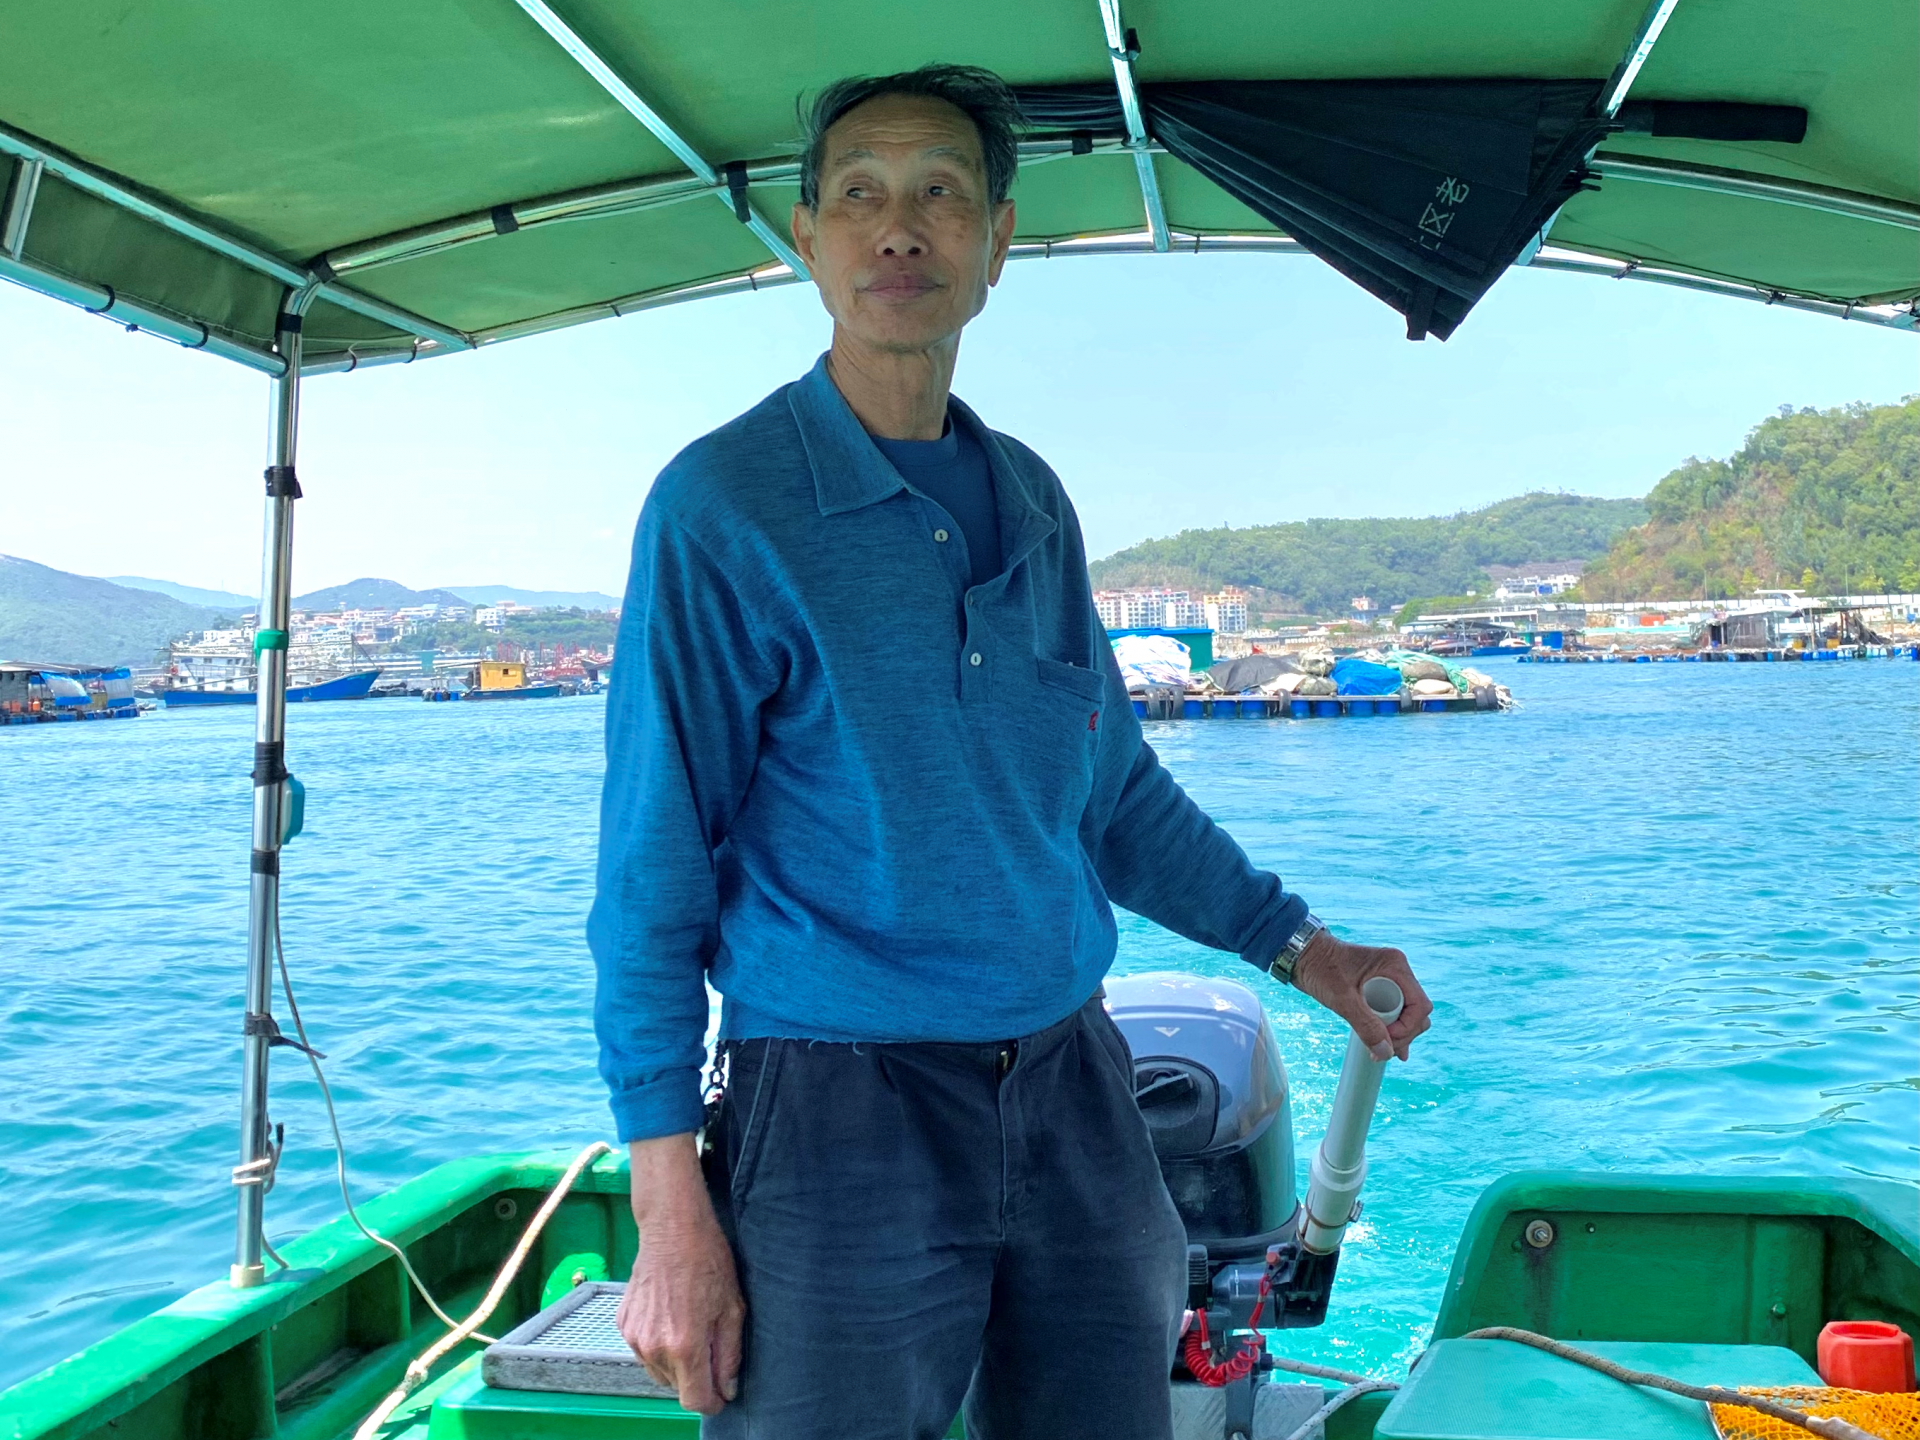 寻访深圳最后一批渔民 ——深圳疍家人从海上居民到南渔村村民跨越世代的变迁